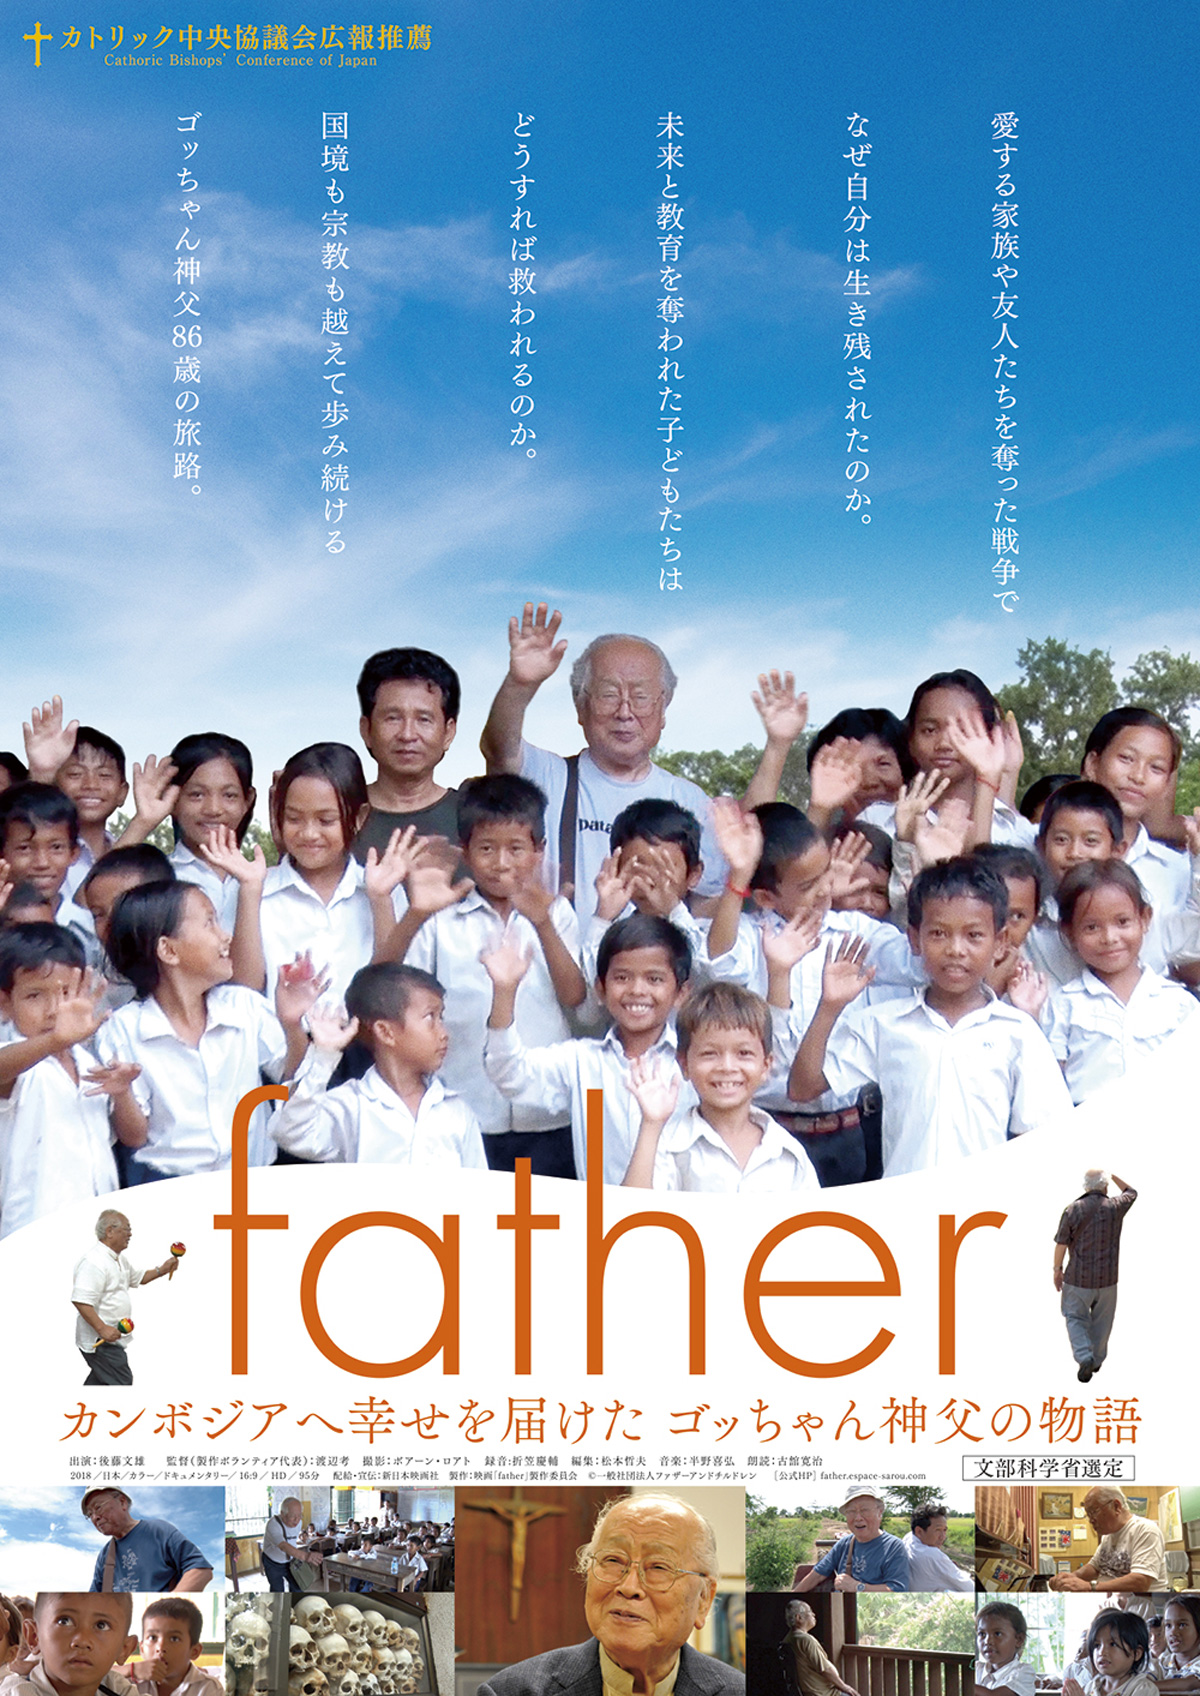 father　カンボジアへ幸せを届けた ゴッちゃん神父の物語の画像